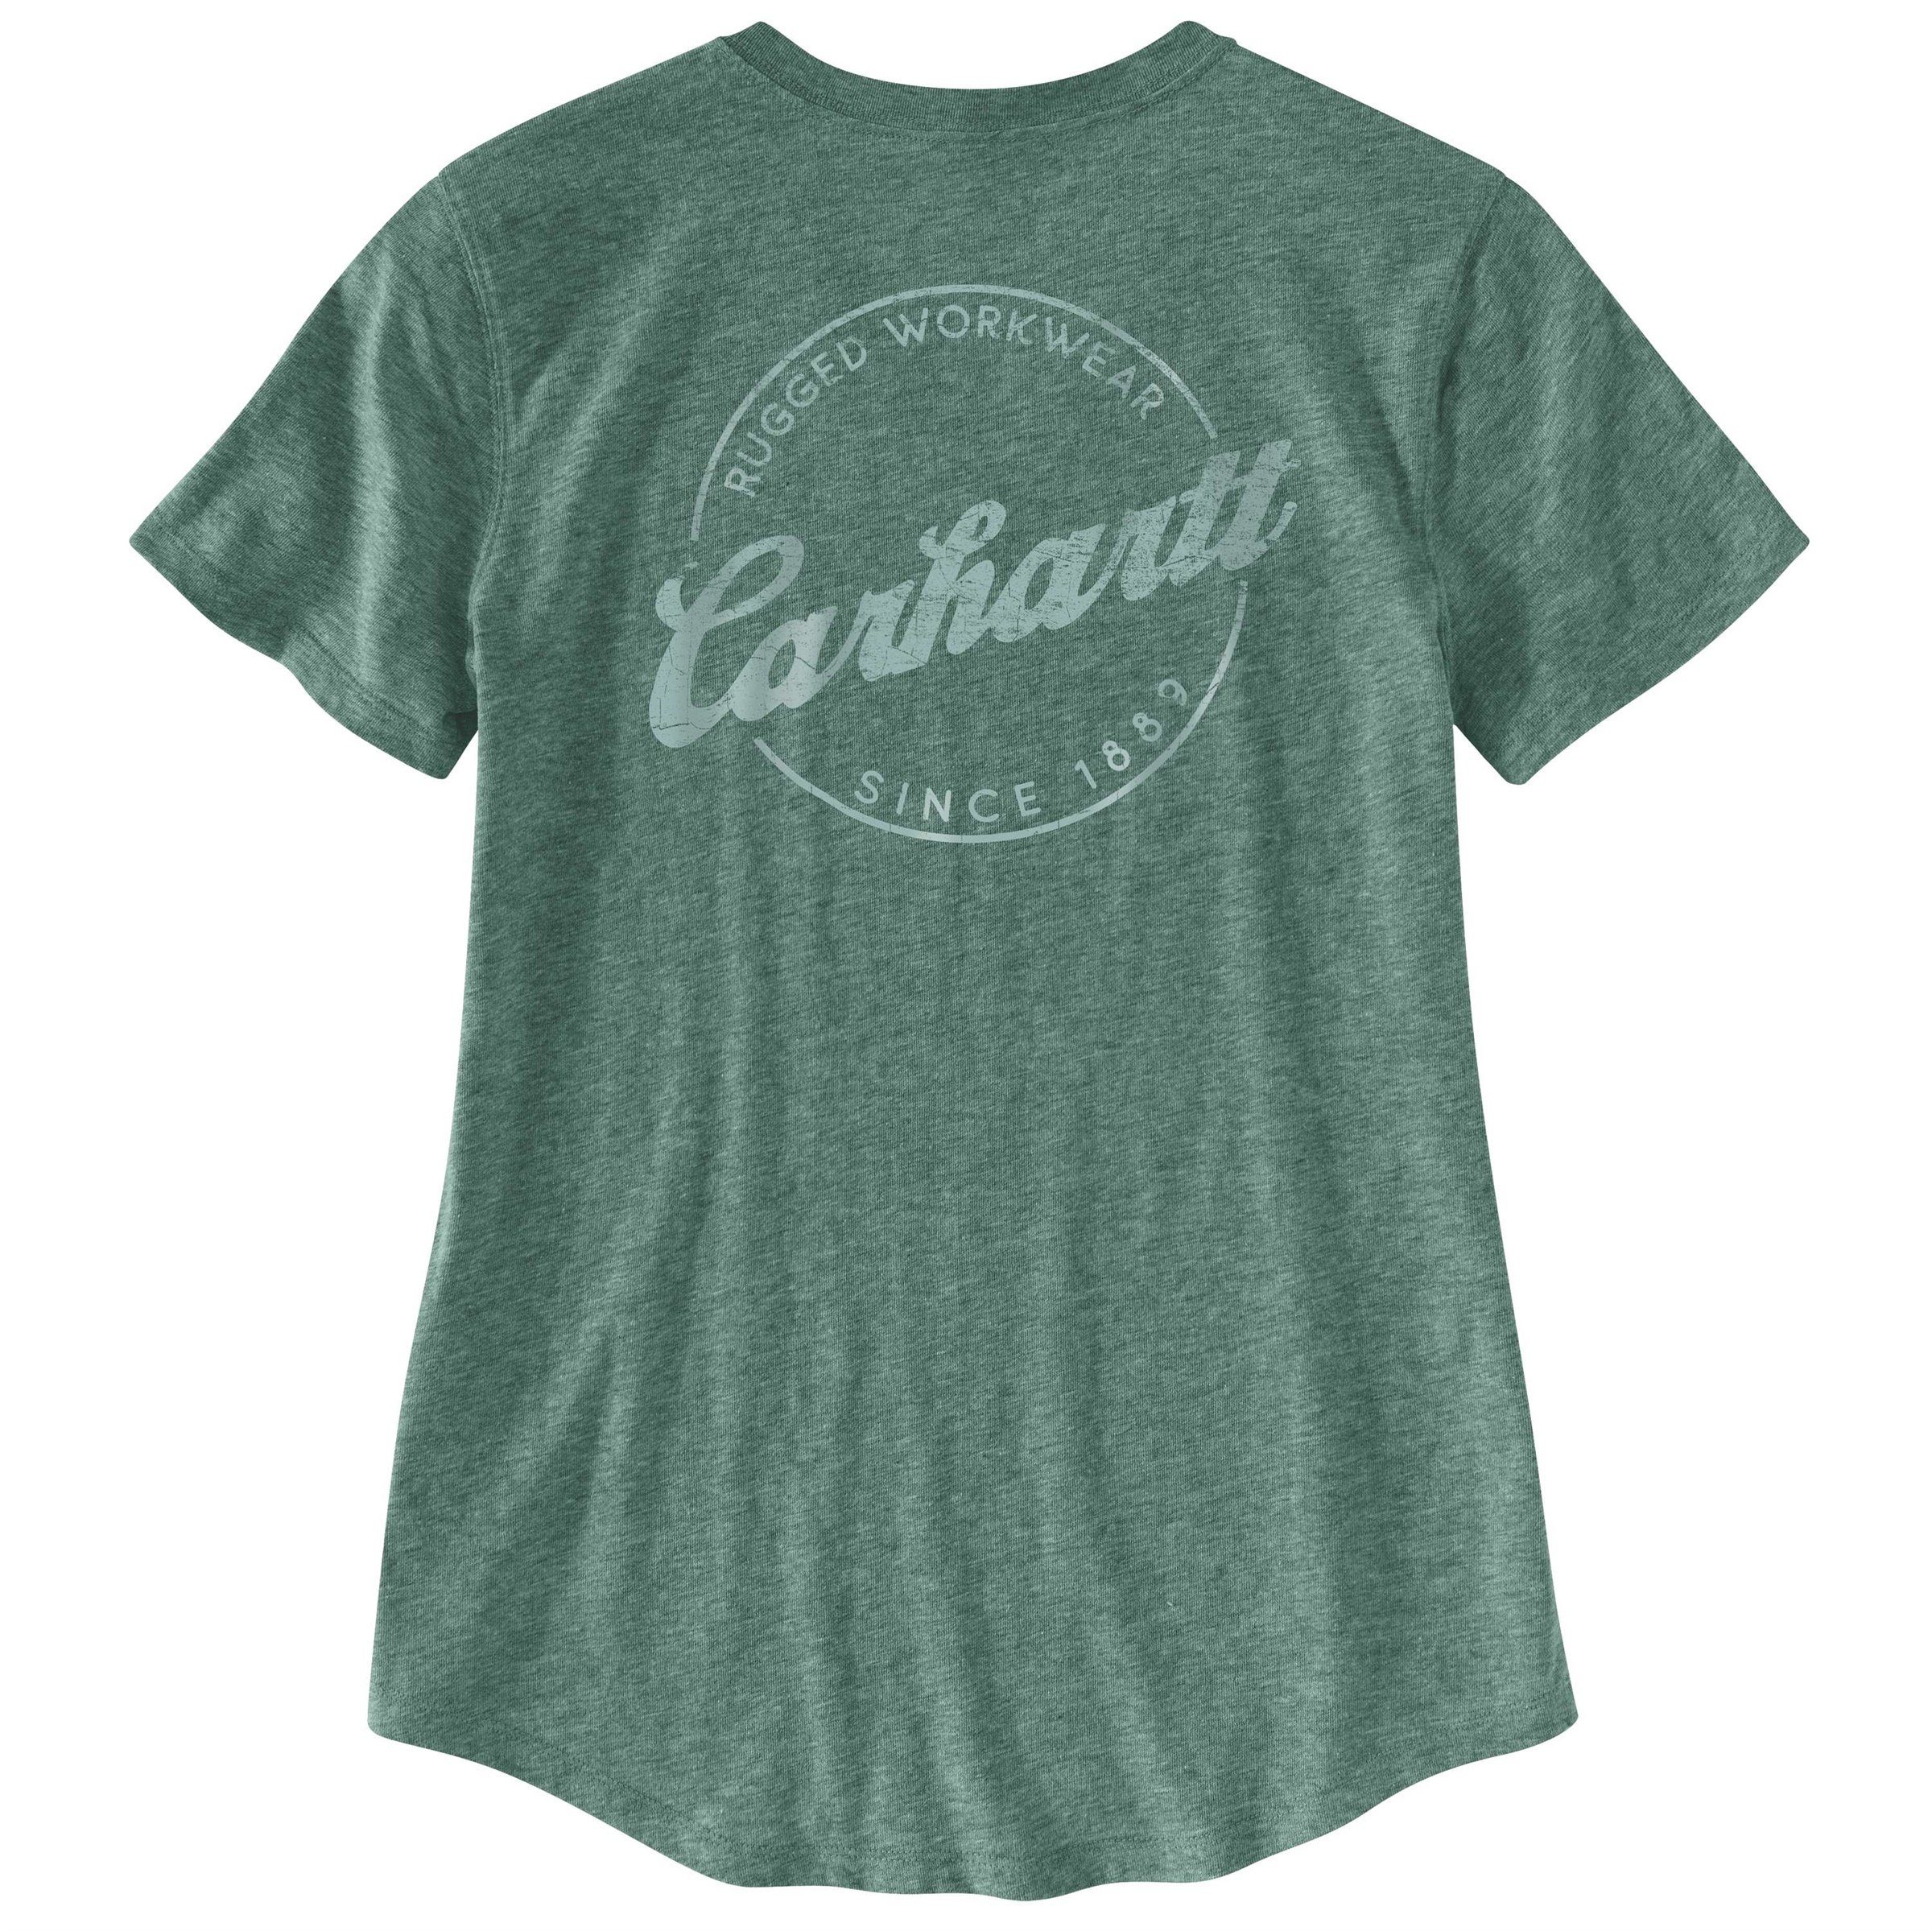 Lockhart Carhartt Damen Carhartt T-Shirt T-Shirt Carhartt green heather nep Adult musk Graphic